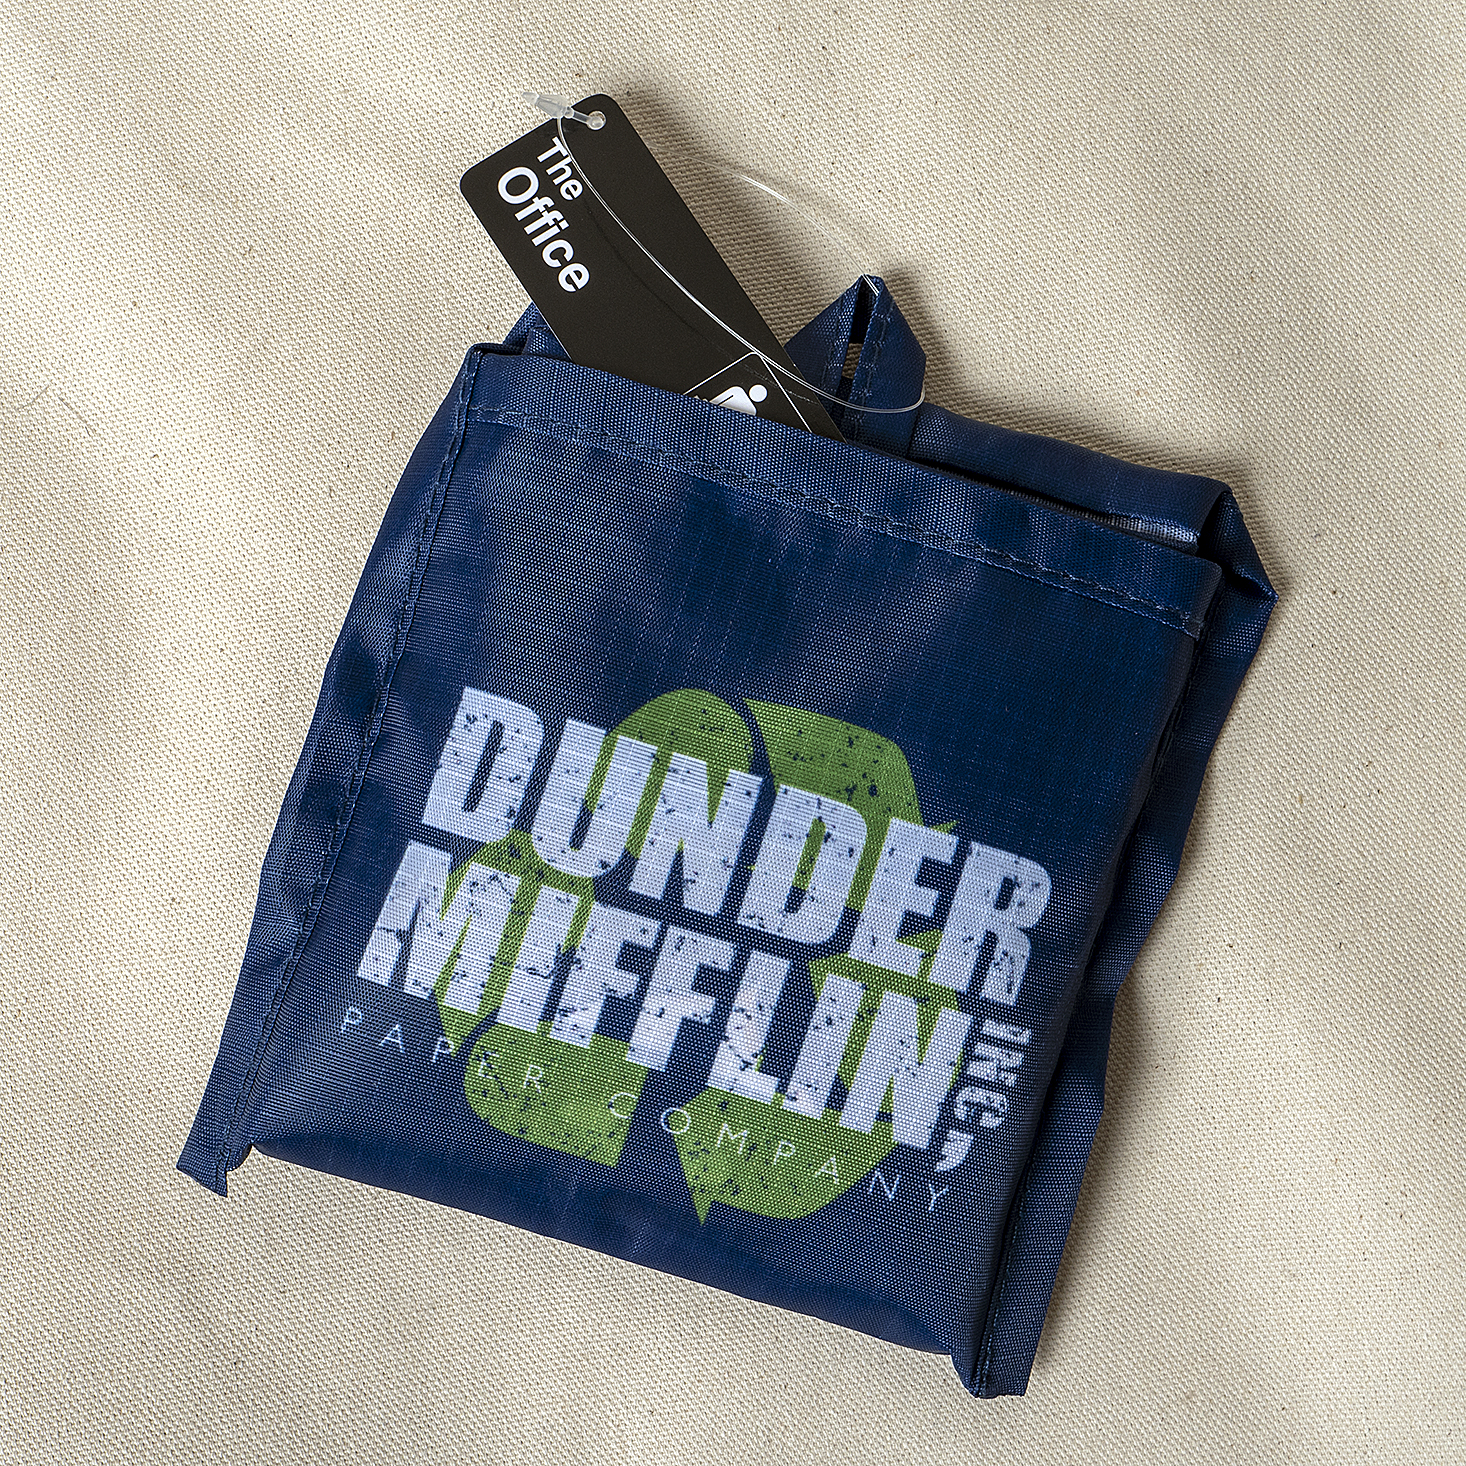 Dunder Mifflin Lunch Bag